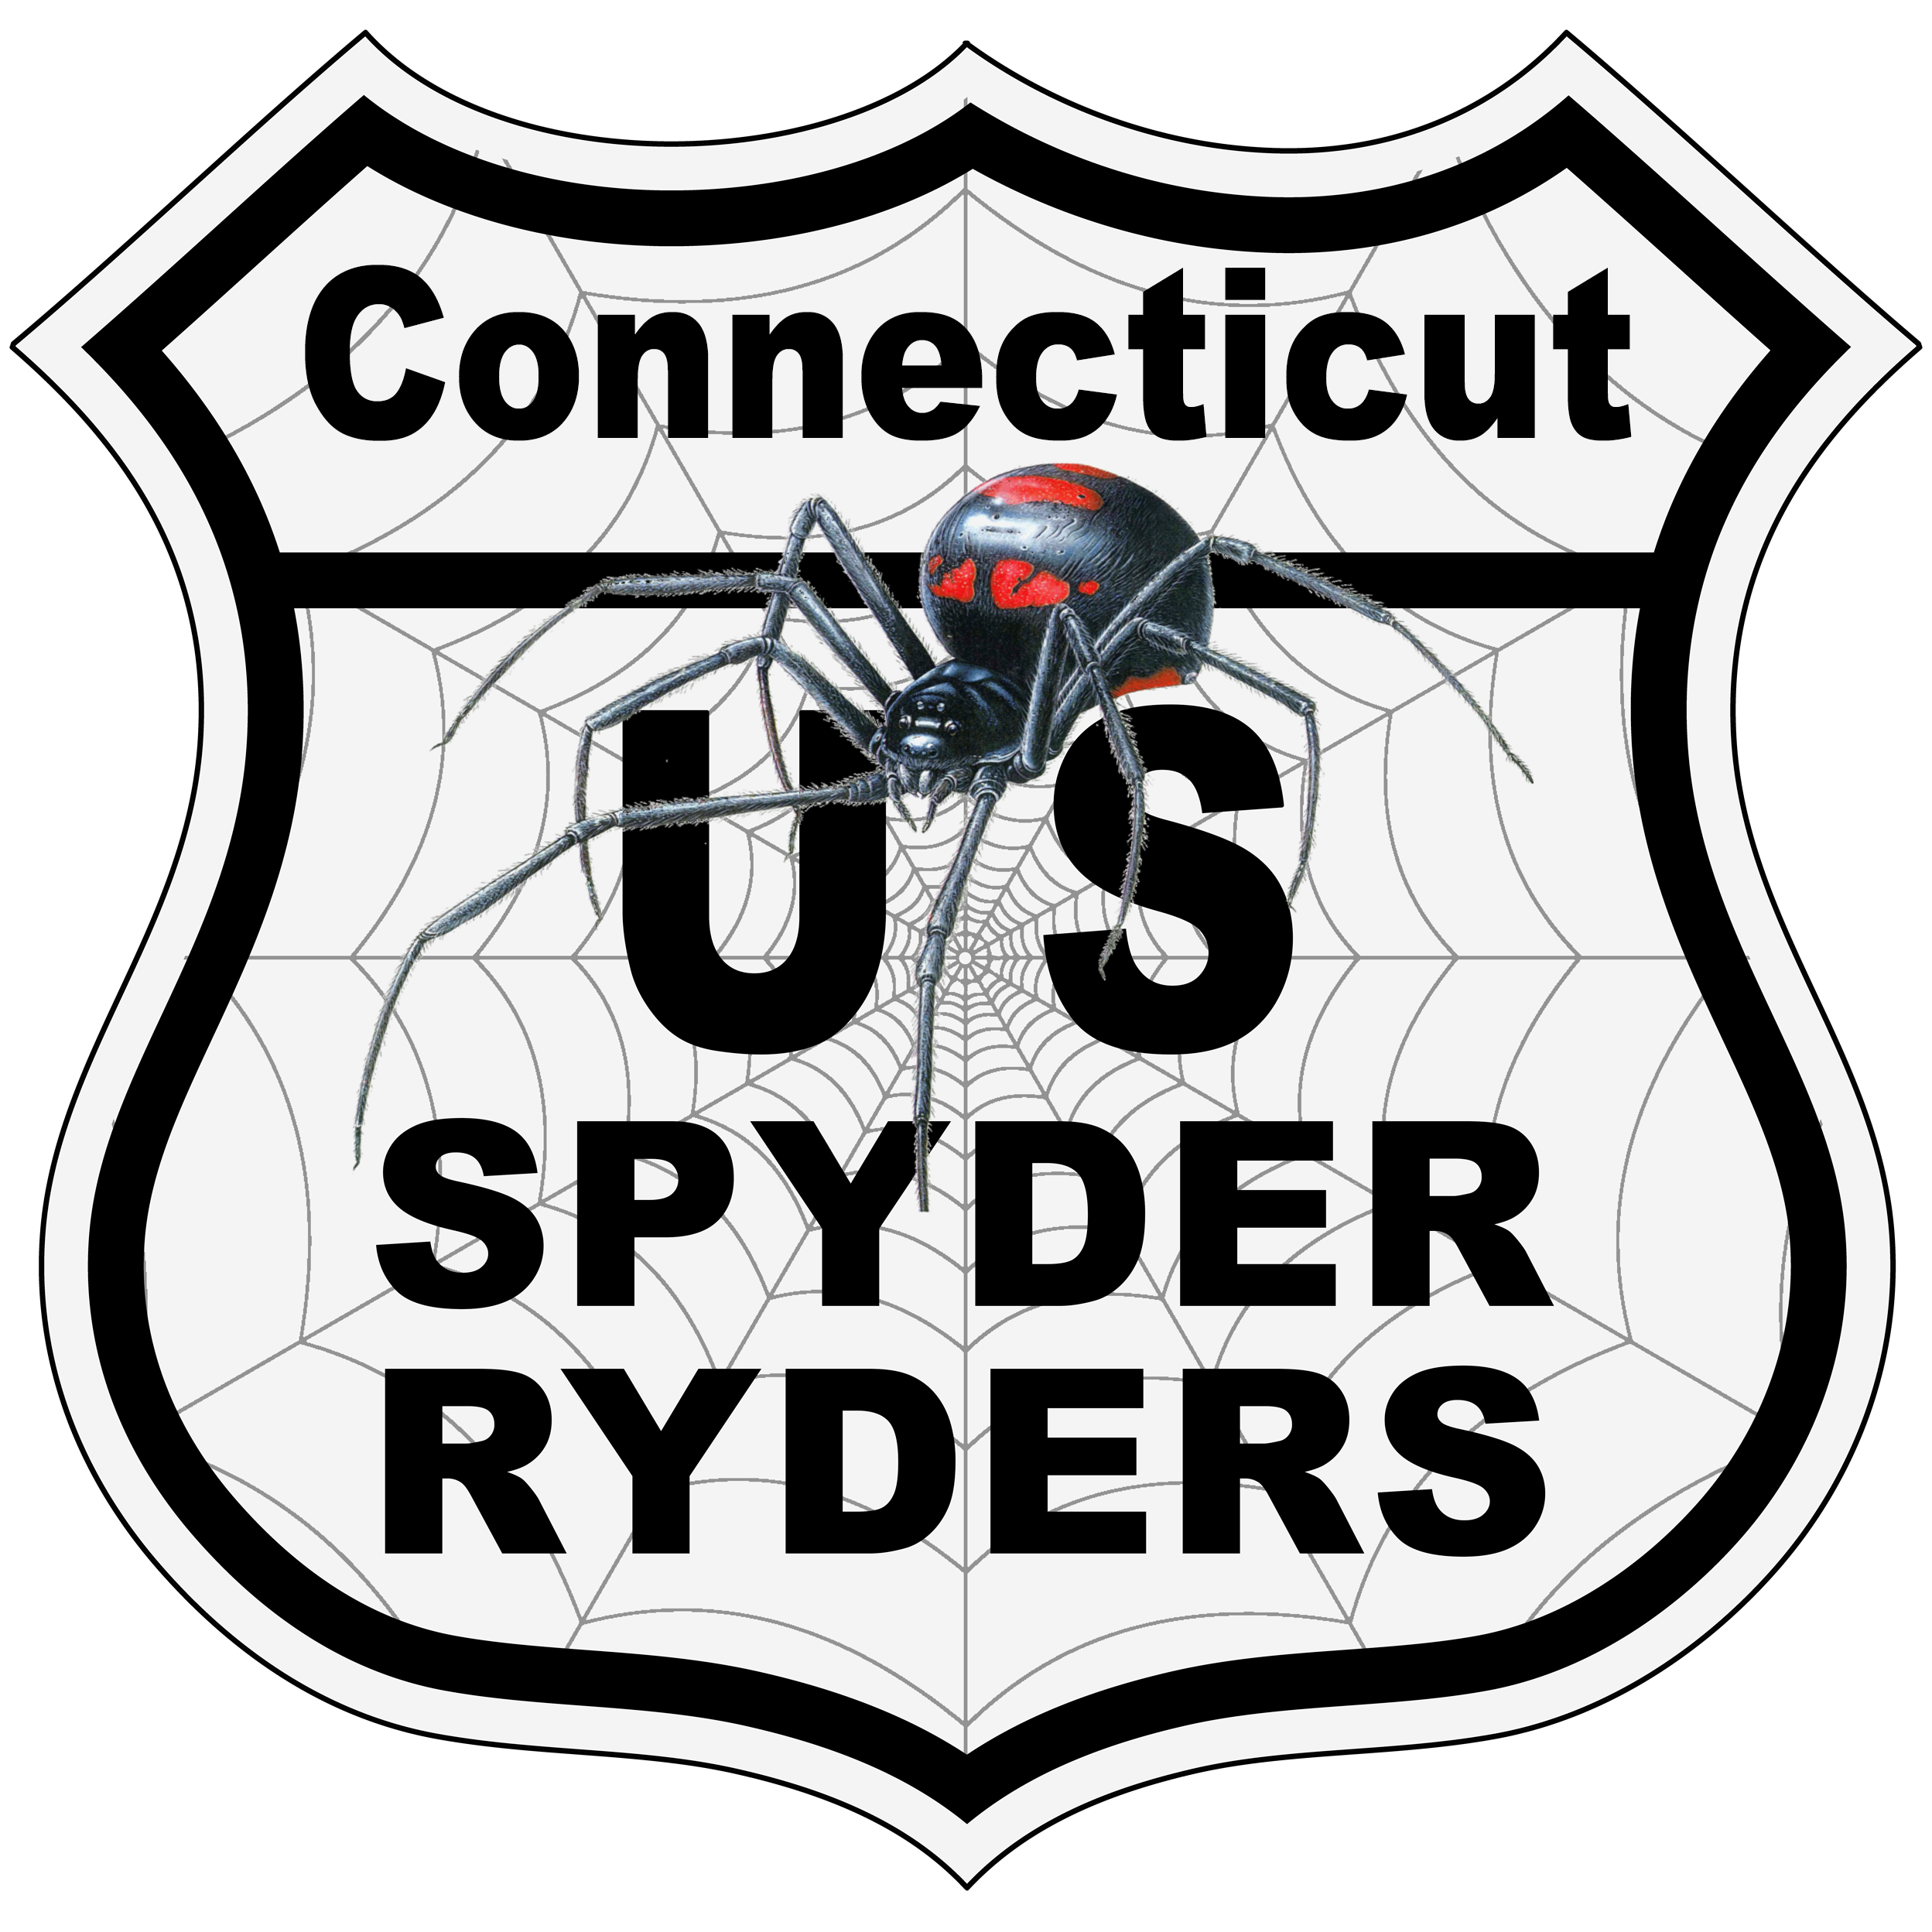 US_Spyder_Ryder_CT Connecticut.png